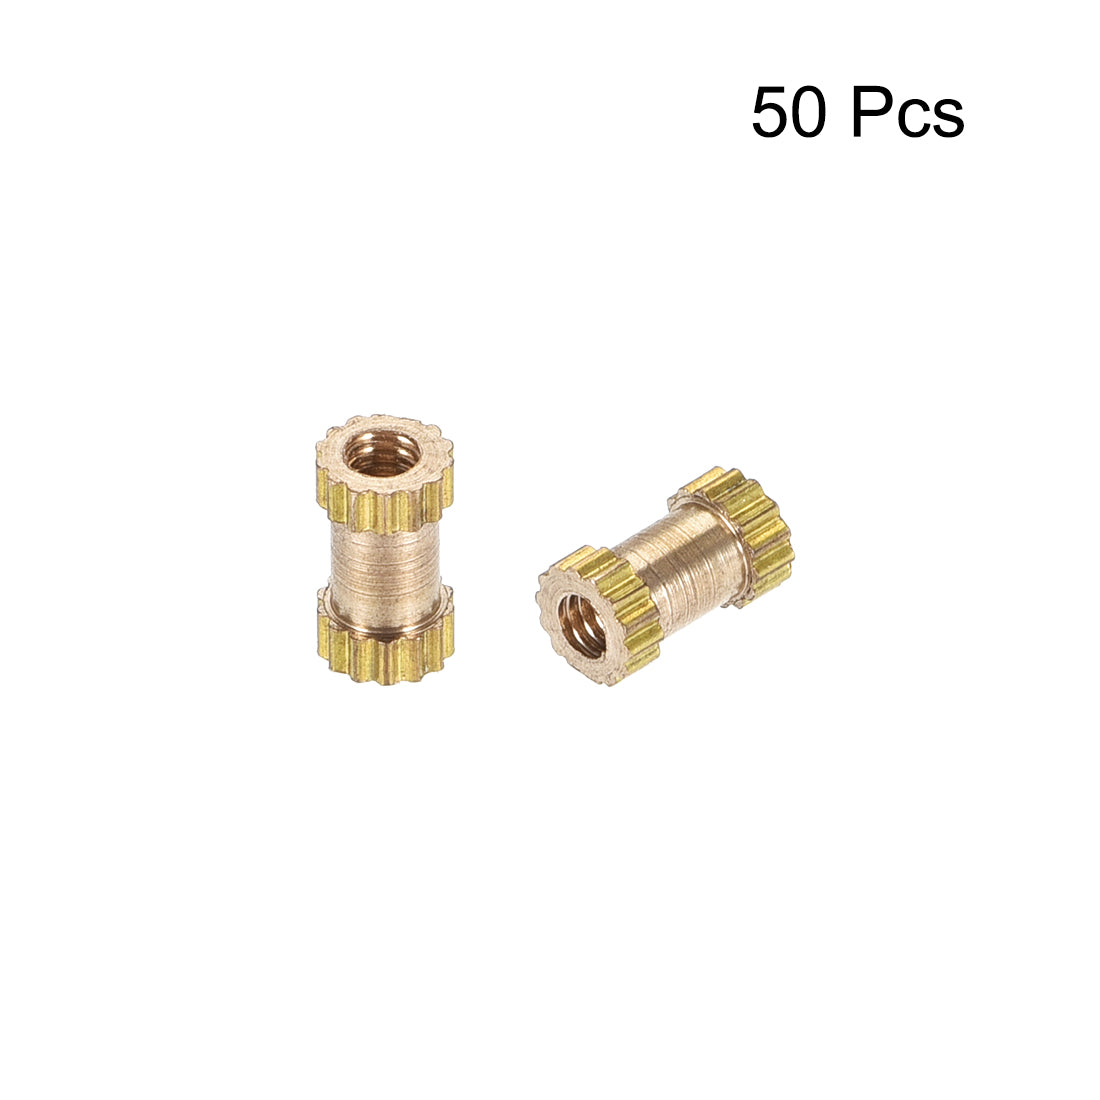 uxcell Uxcell Knurled Insert Nuts, M2 x 6mm(L) x 3.5mm(OD) Female Thread Brass Embedment Assortment Kit, 50 Pcs